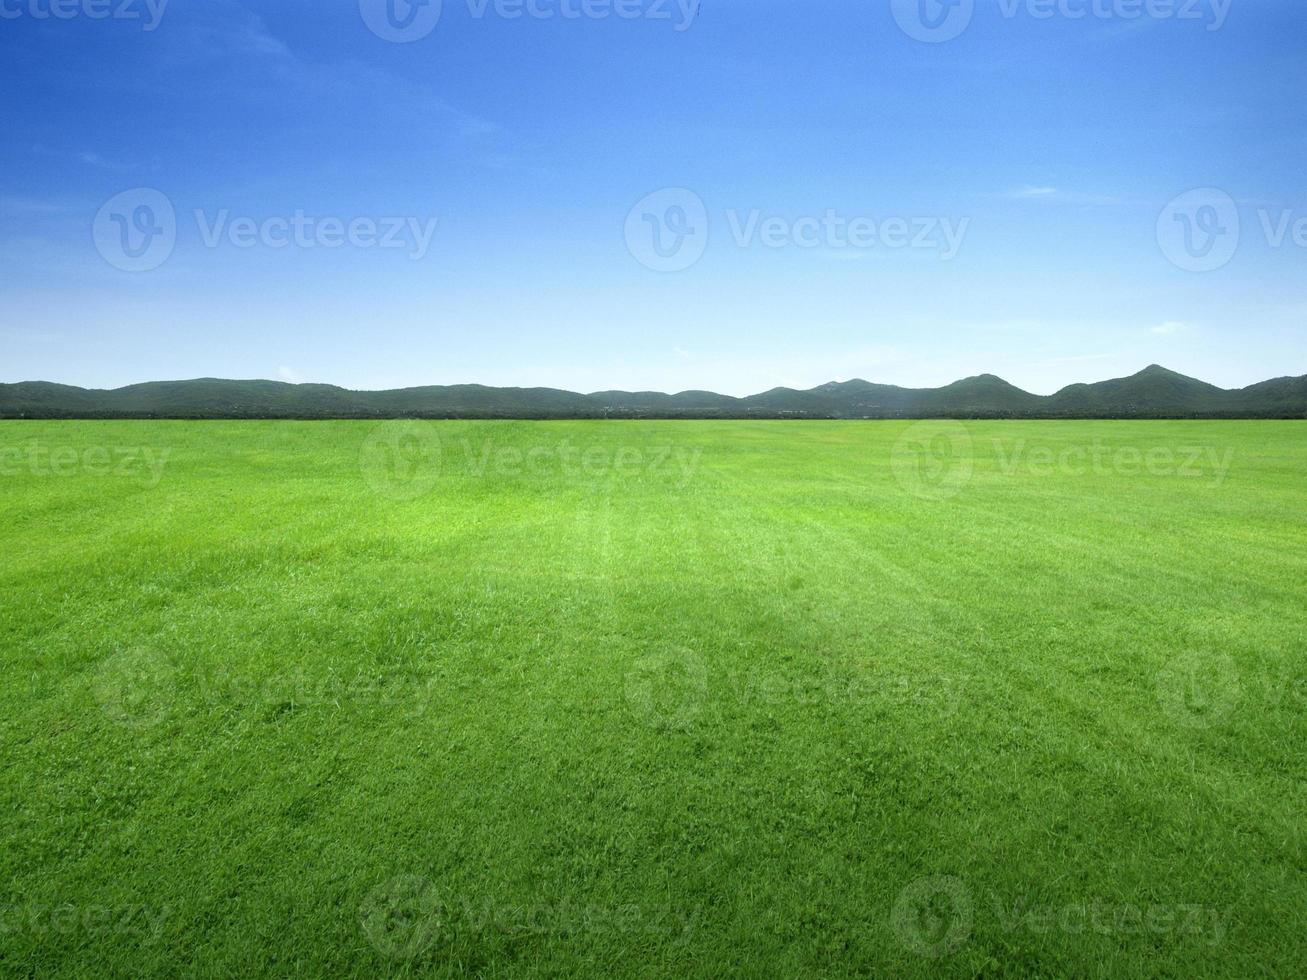 image de fond d'un champ d'herbe luxuriante sous un ciel bleu photo